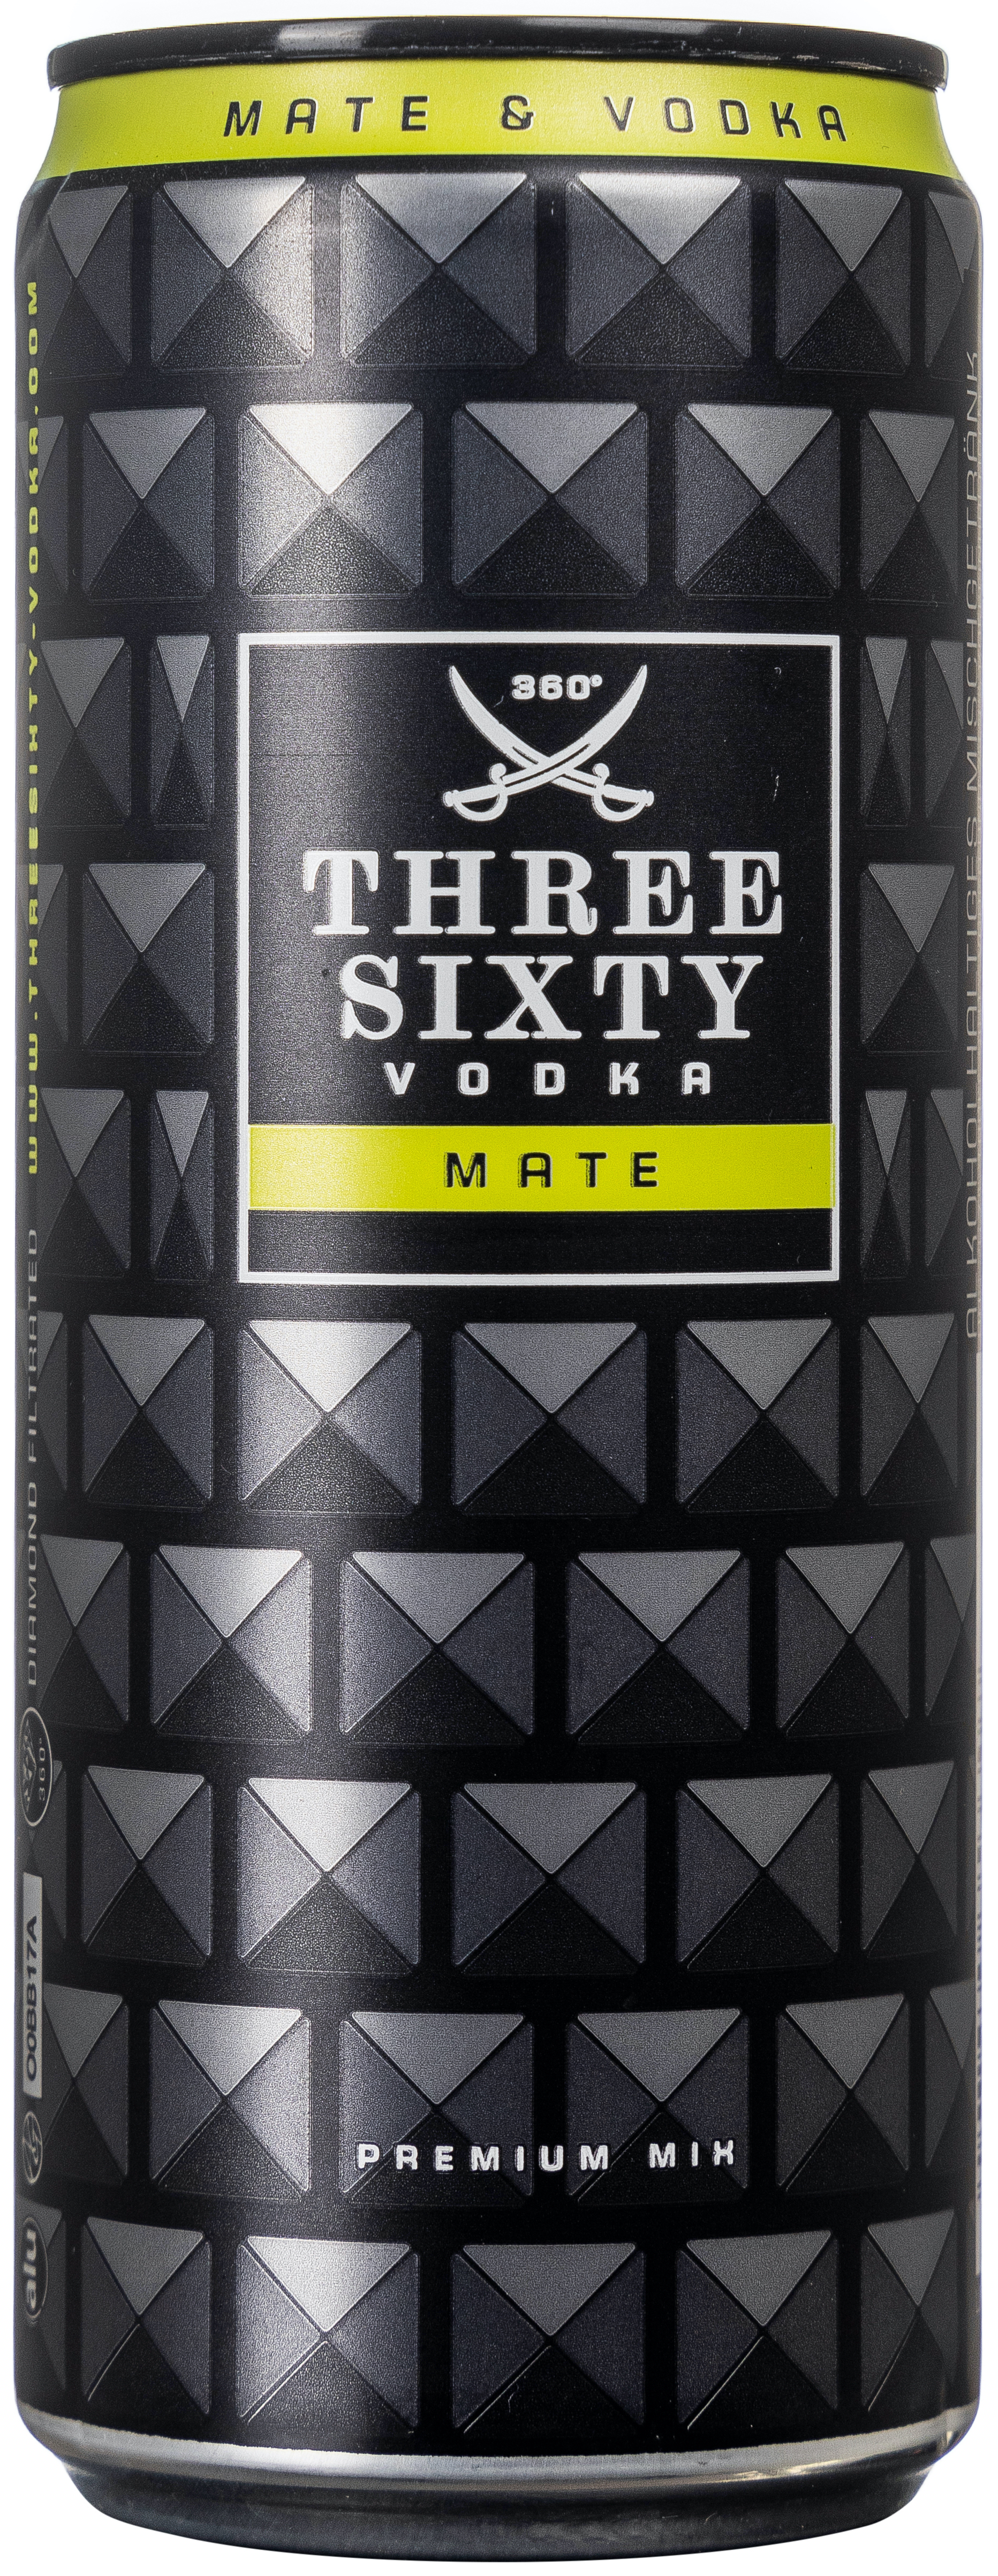 Three Sixty Vodka & Mate 10% vol. 0,33L EINWEG 